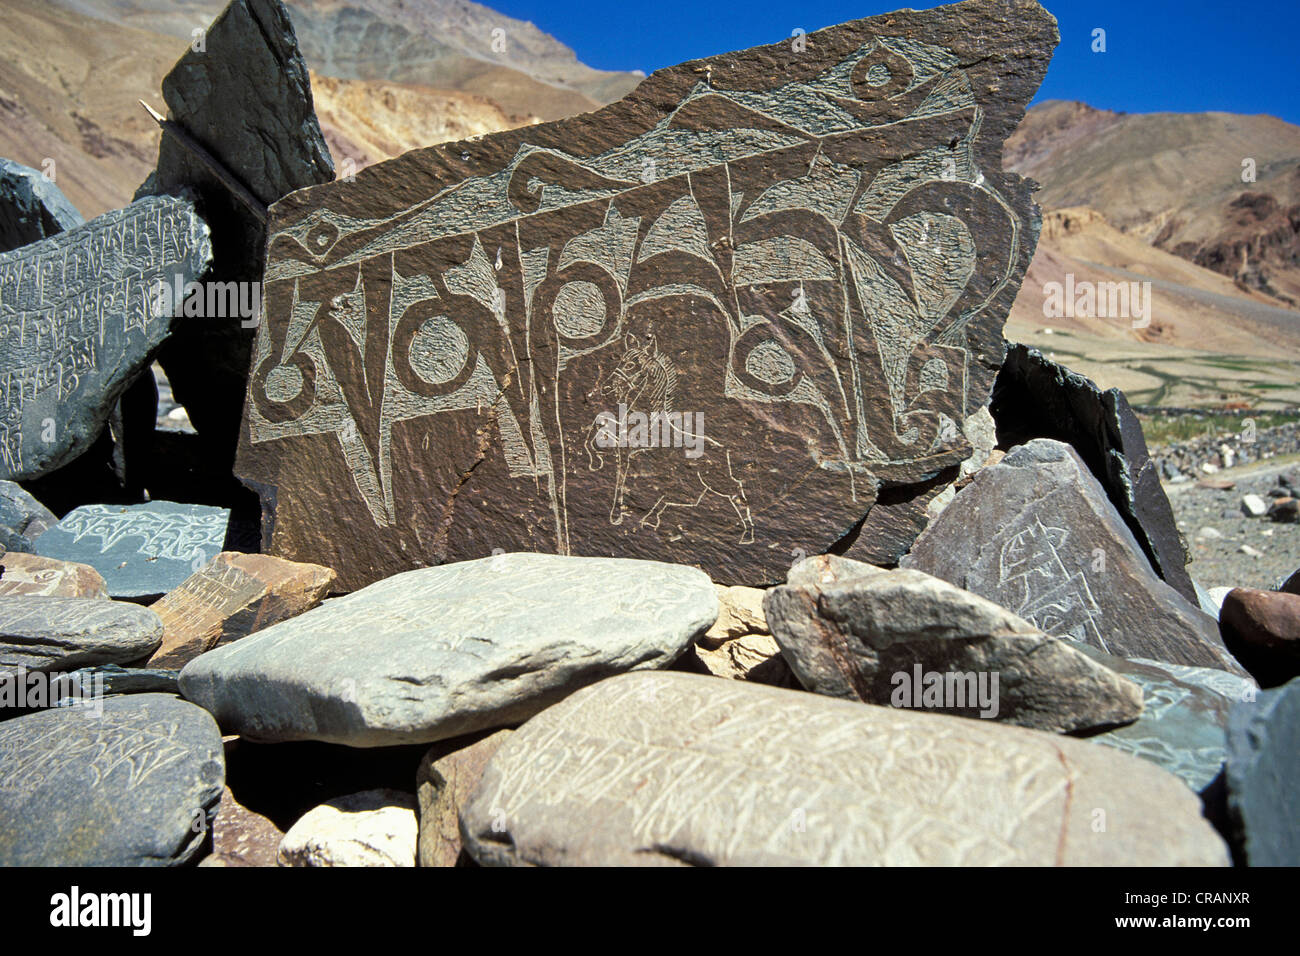 Gebet-Stein mit dem weit verbreiteten buddhistischen Mantra Om Mani Padme Hum, Zanskar-Tal, Zanskar, Ladakh, Jammu und Kaschmir Stockfoto